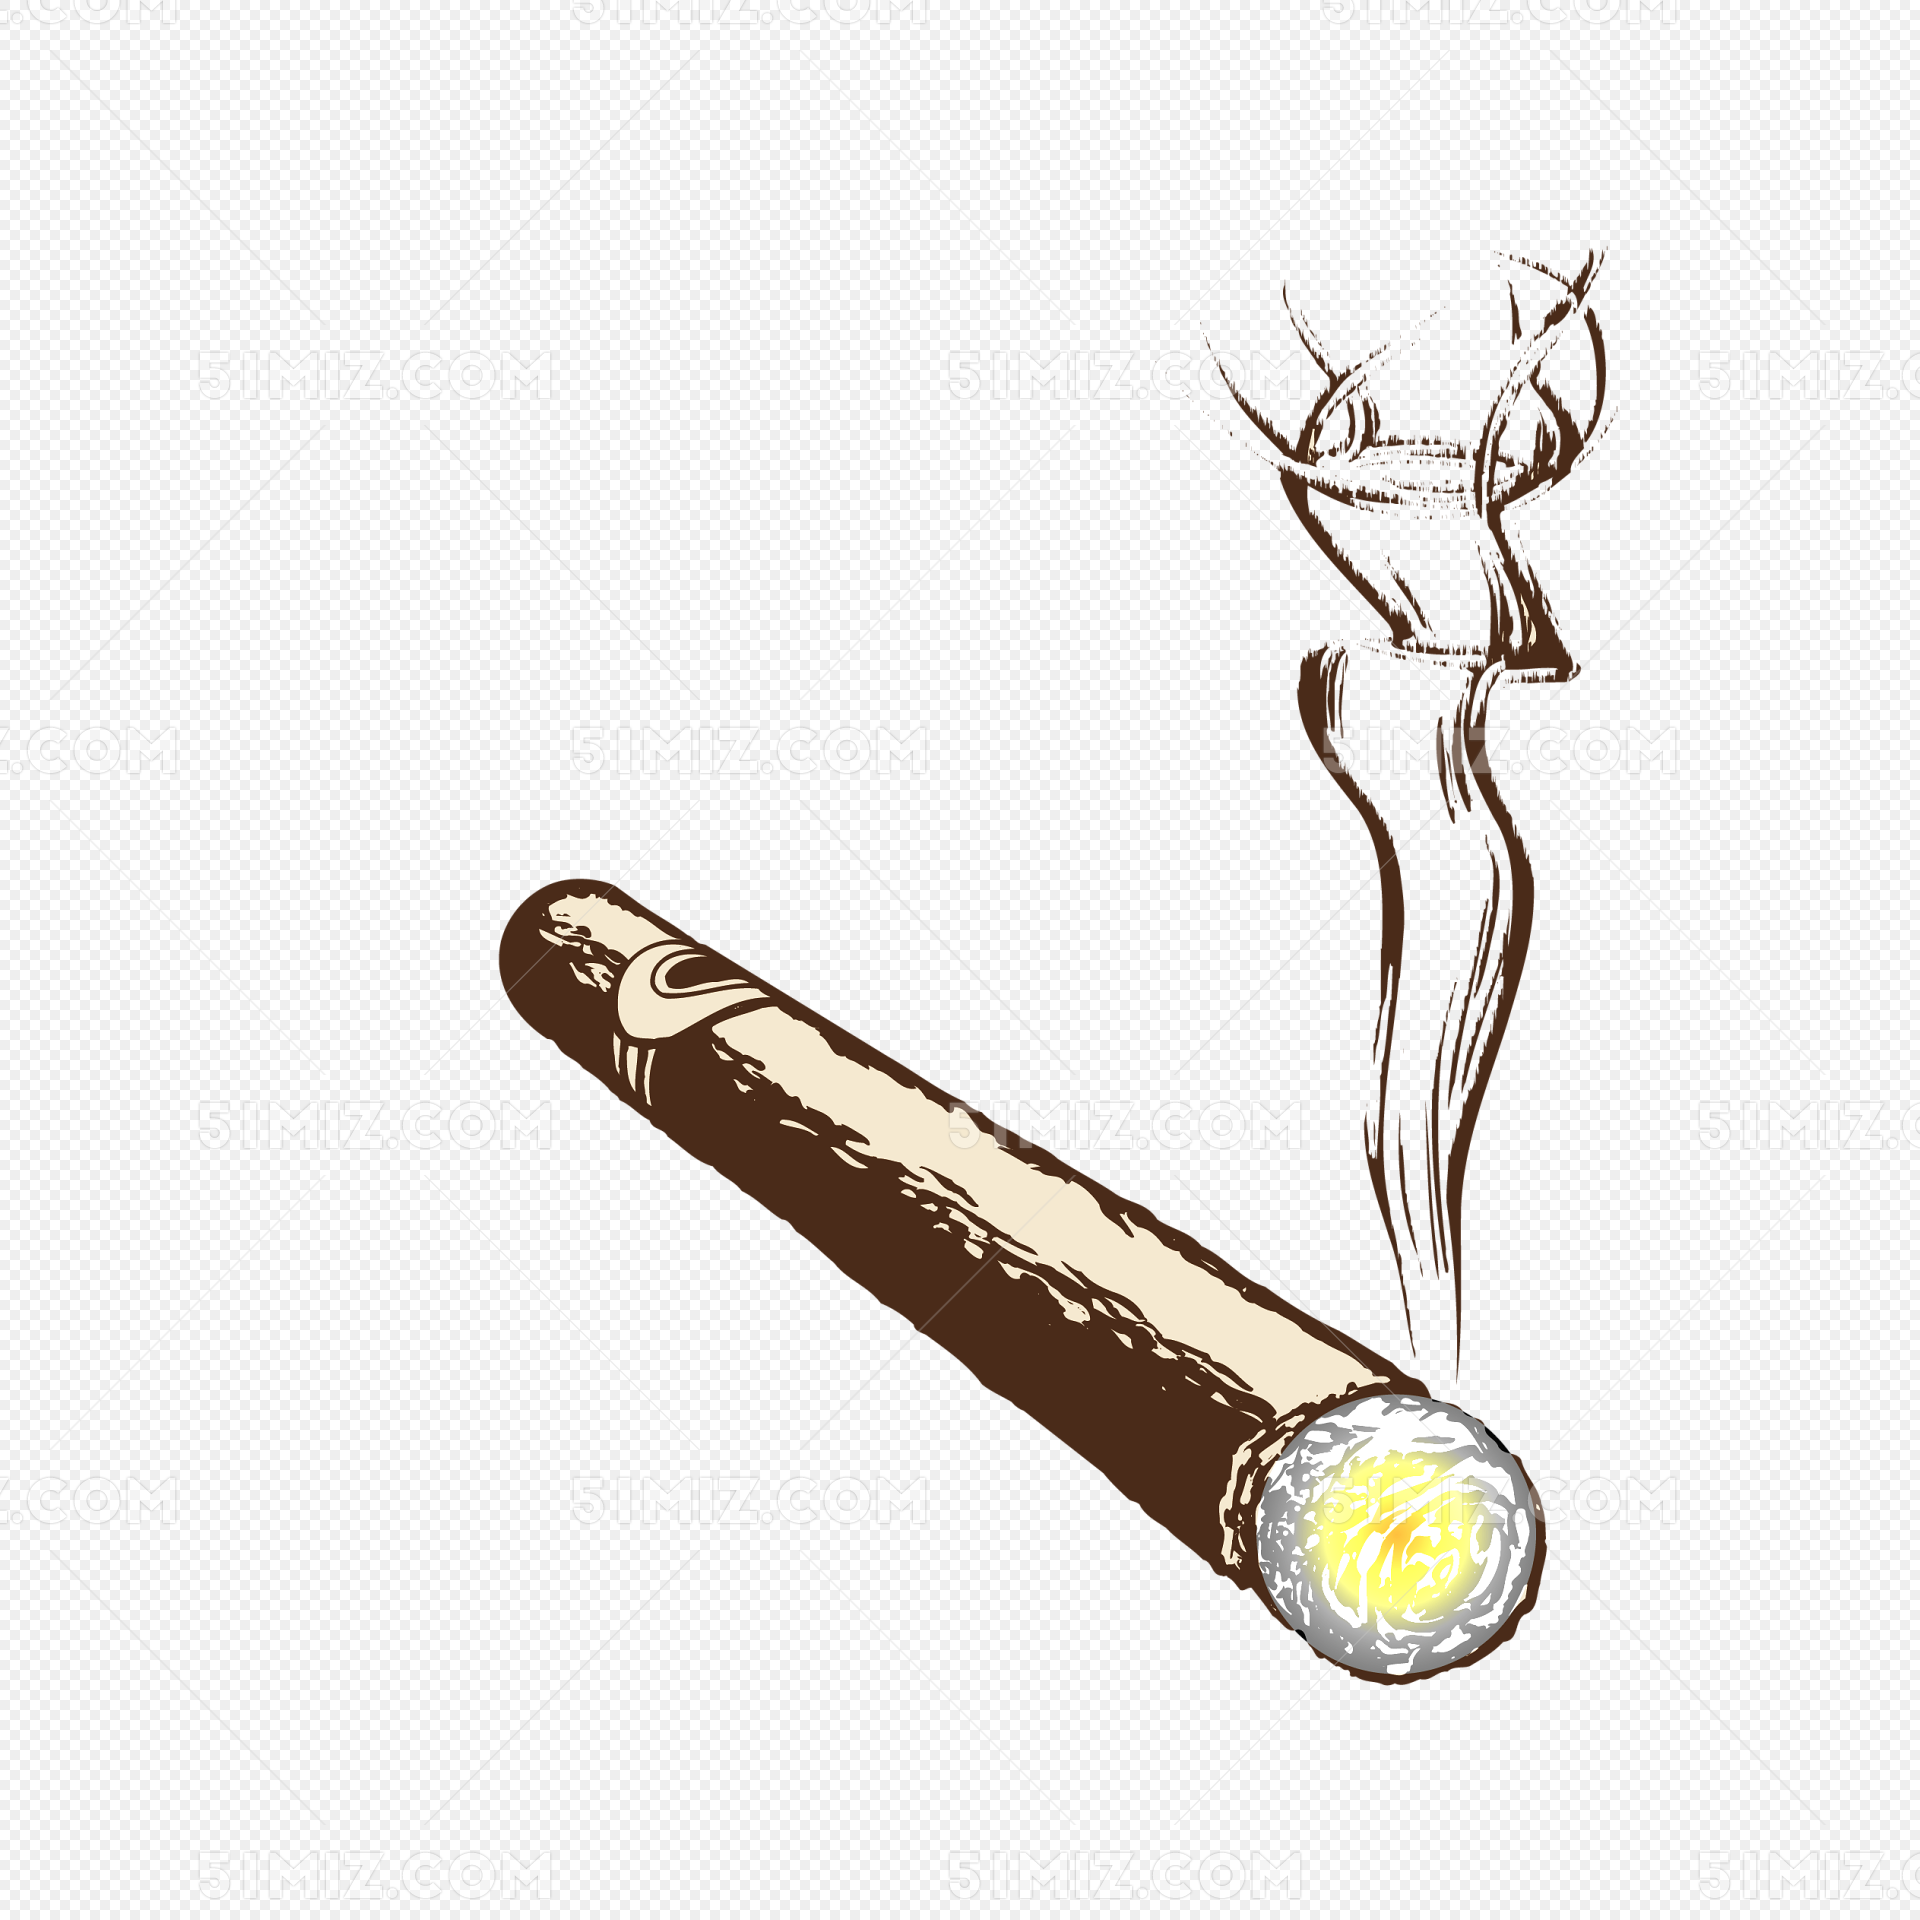 吸烟香烟的线画漫画 向量例证. 插画 包括有 动画片, 自由, 香烟, 例证, 古怪, 现有量, 艺术 - 150433901